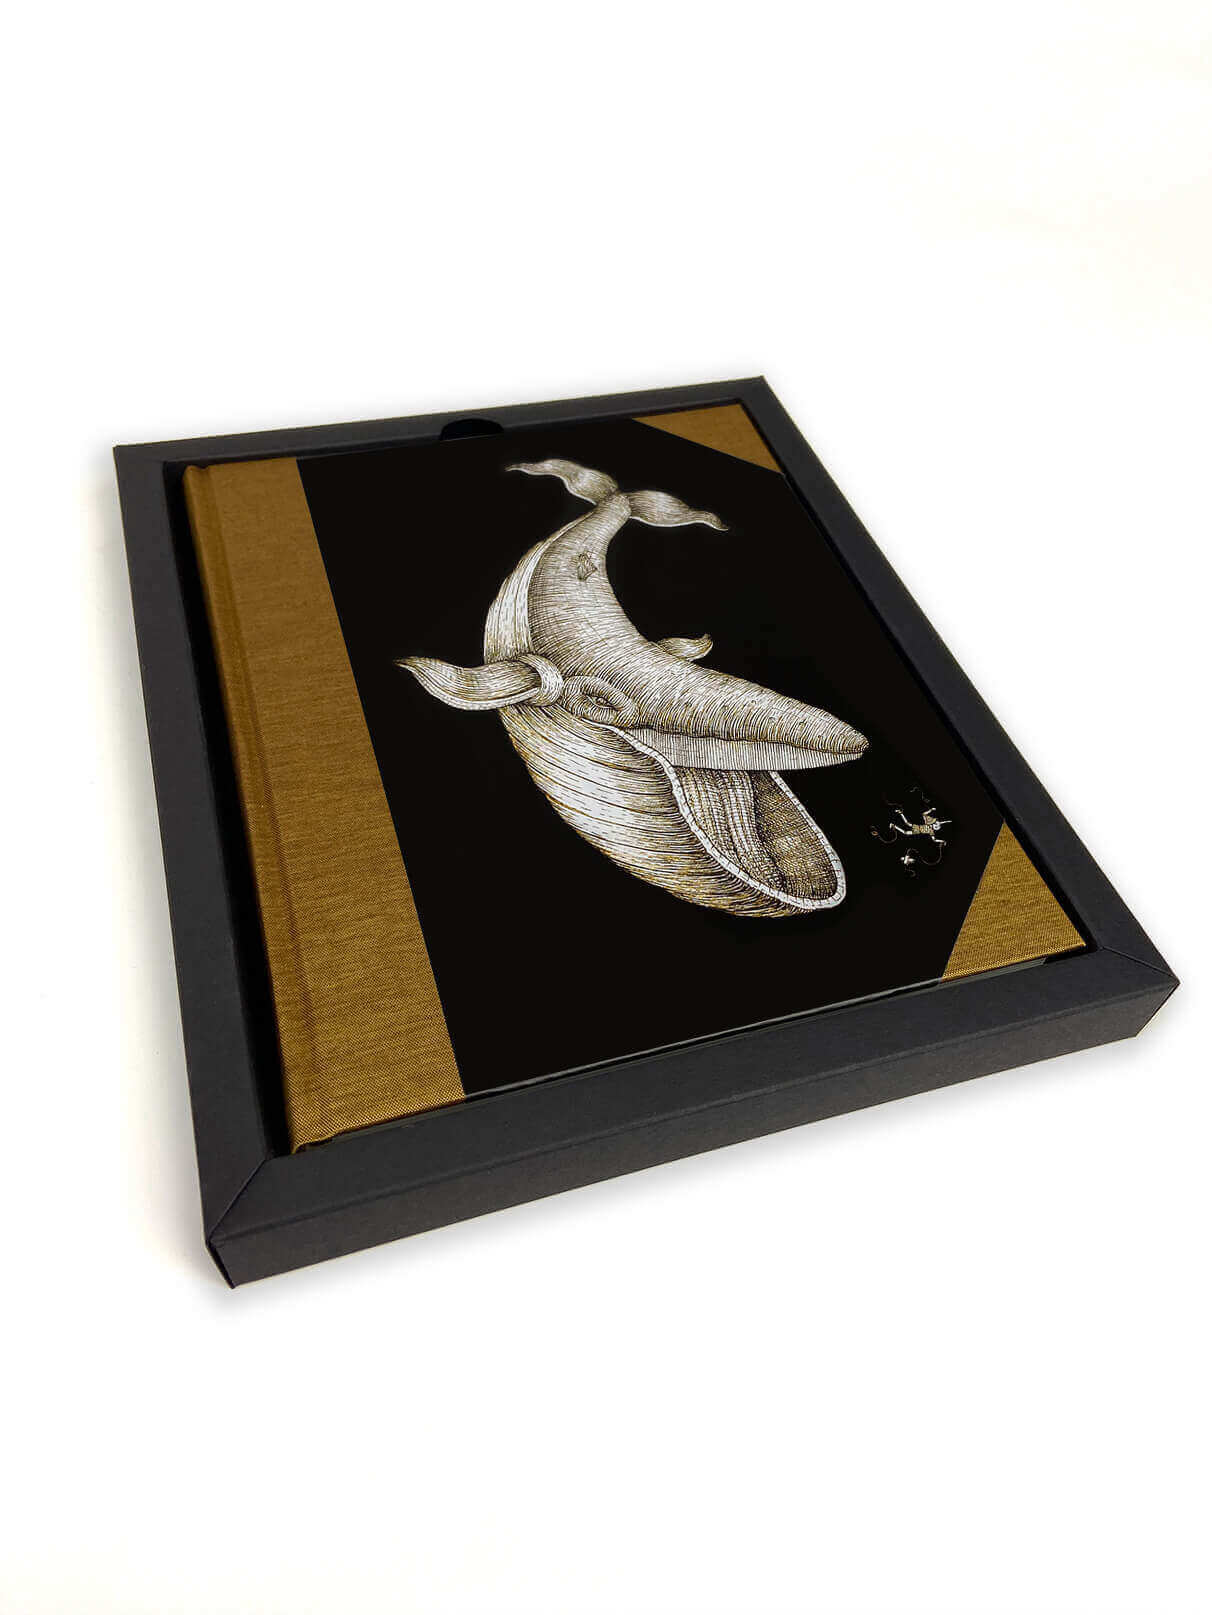 Aquatic Creatures - pinocchio notebook